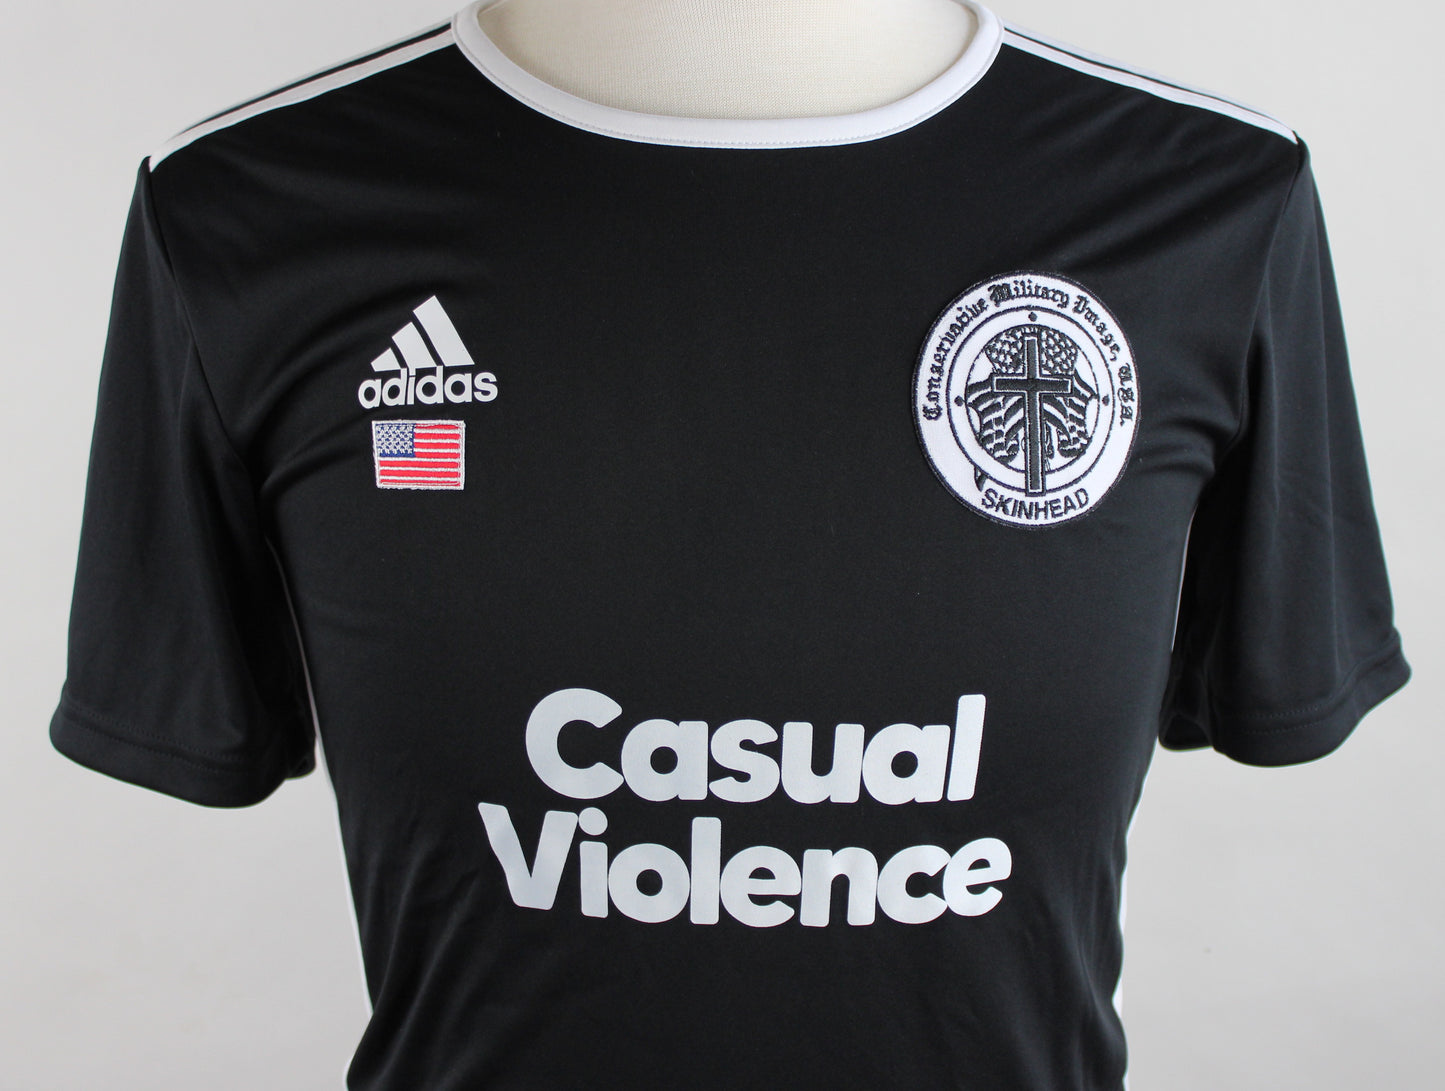 Black Casual Violence soccer kit